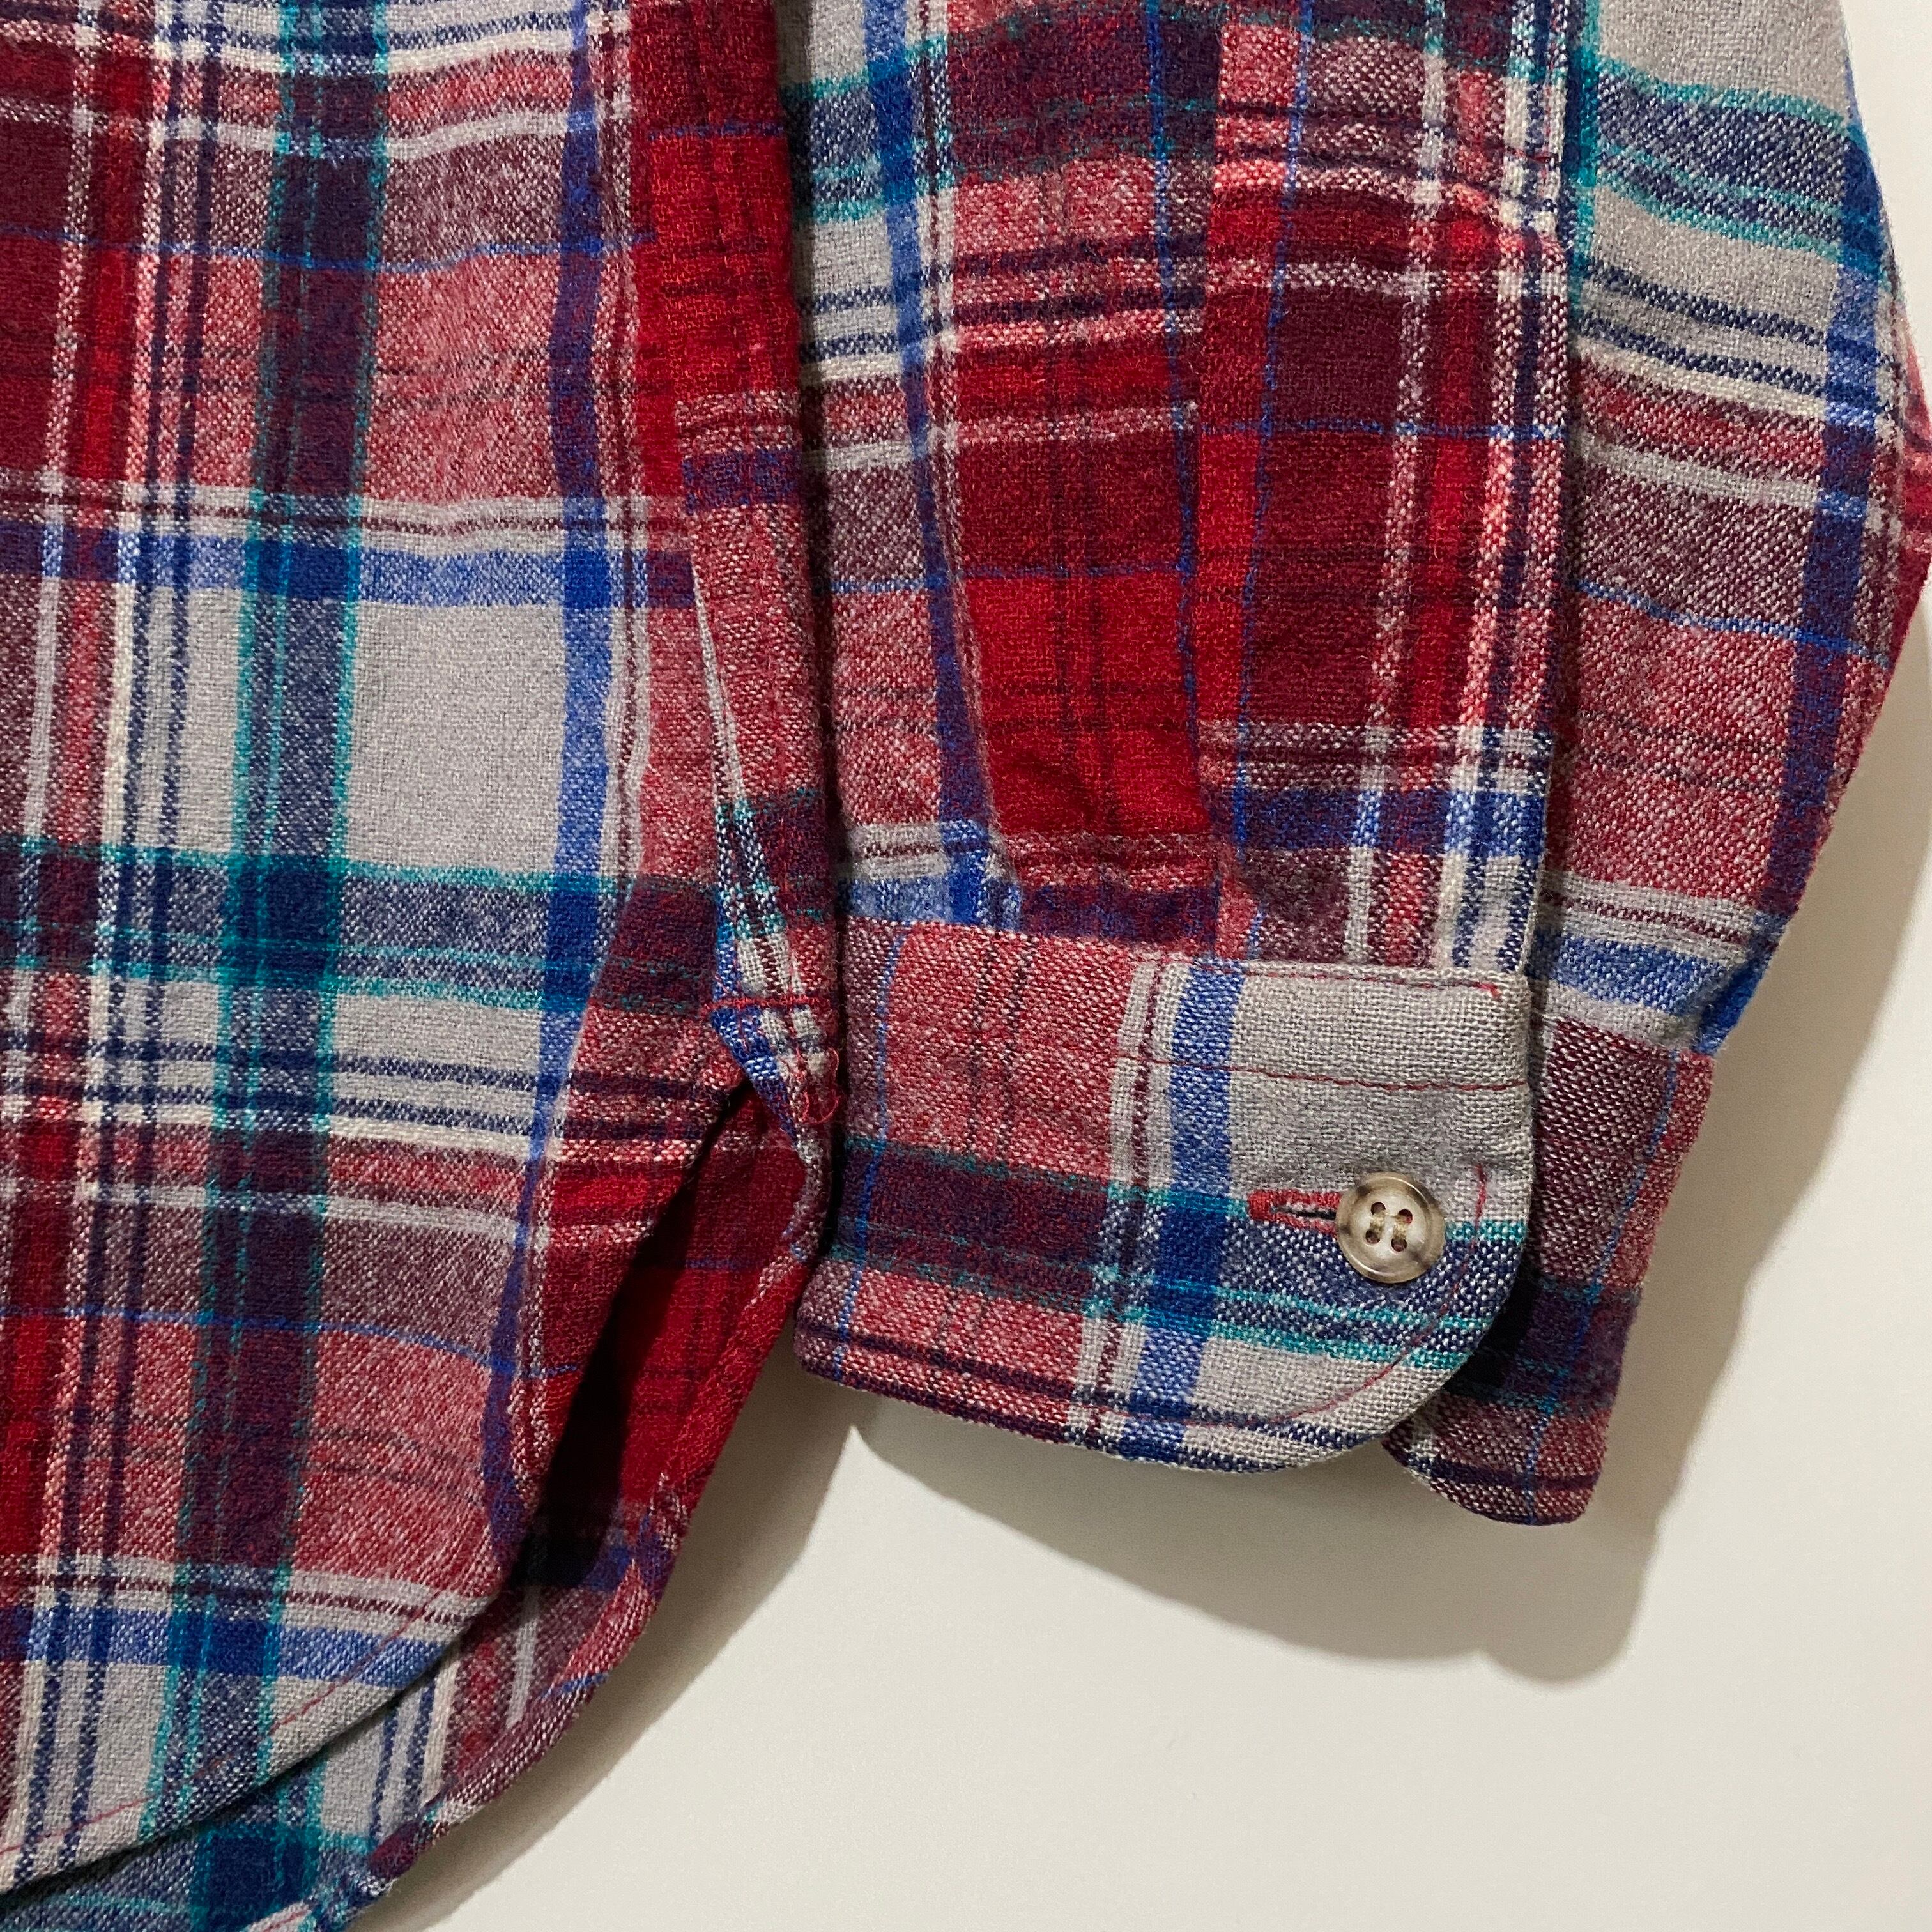 USA製 70s PENDLETON ウールシャツ M 100% VIRGIN WOOL | Bluri vintage